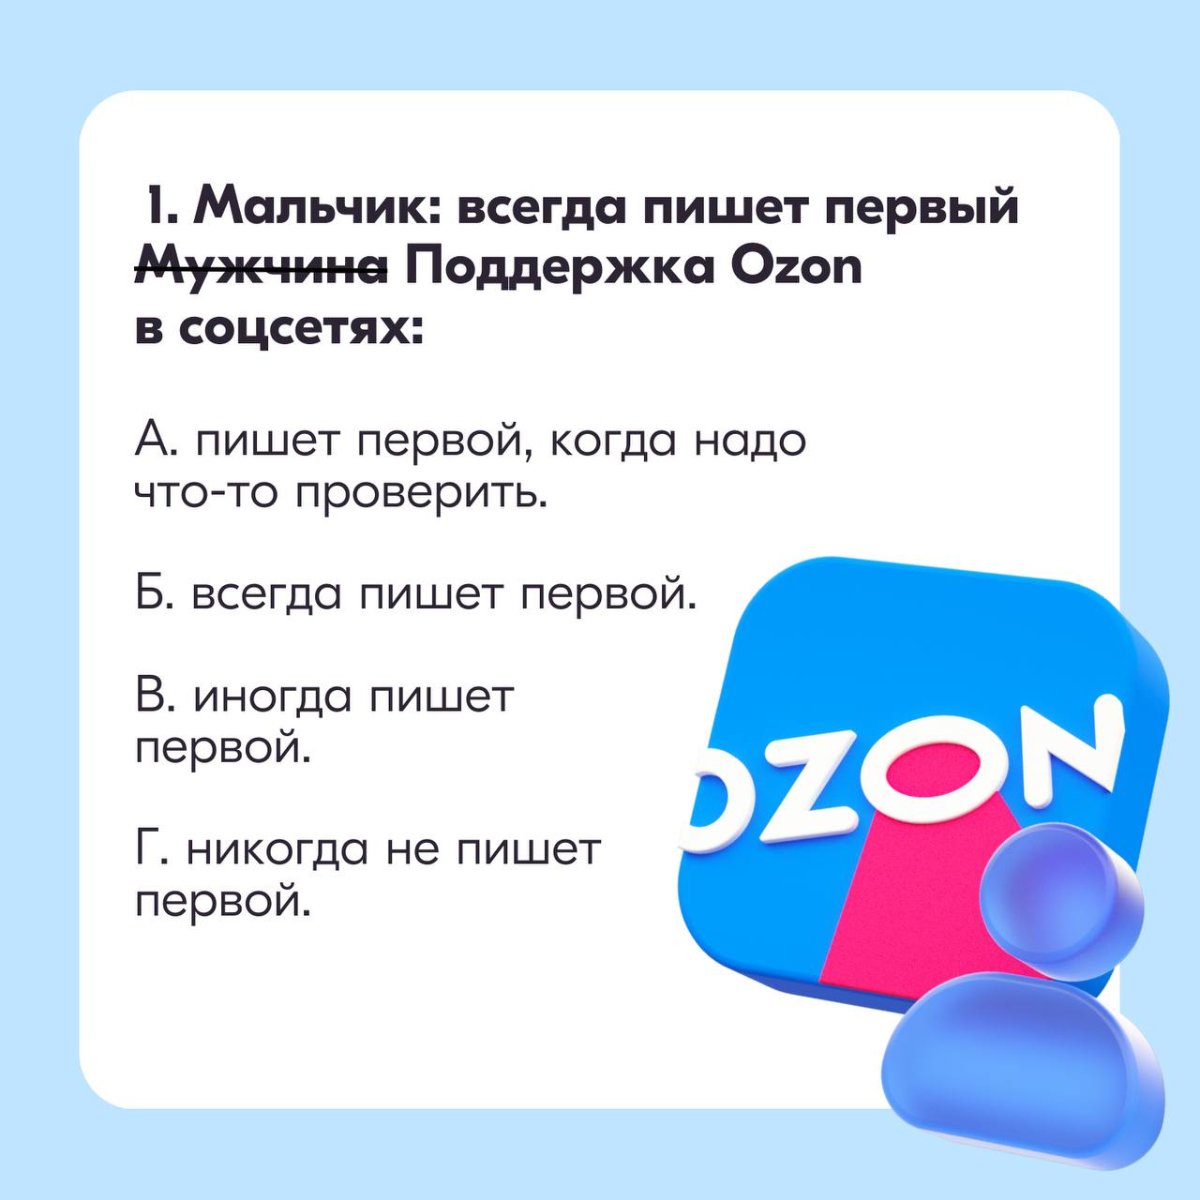 Тест маркетплейс. Маркетплейс Озон. База знаний Озон. Факты про Озон маркетплейс. Маркетплейс Озон картинки номенклатура.